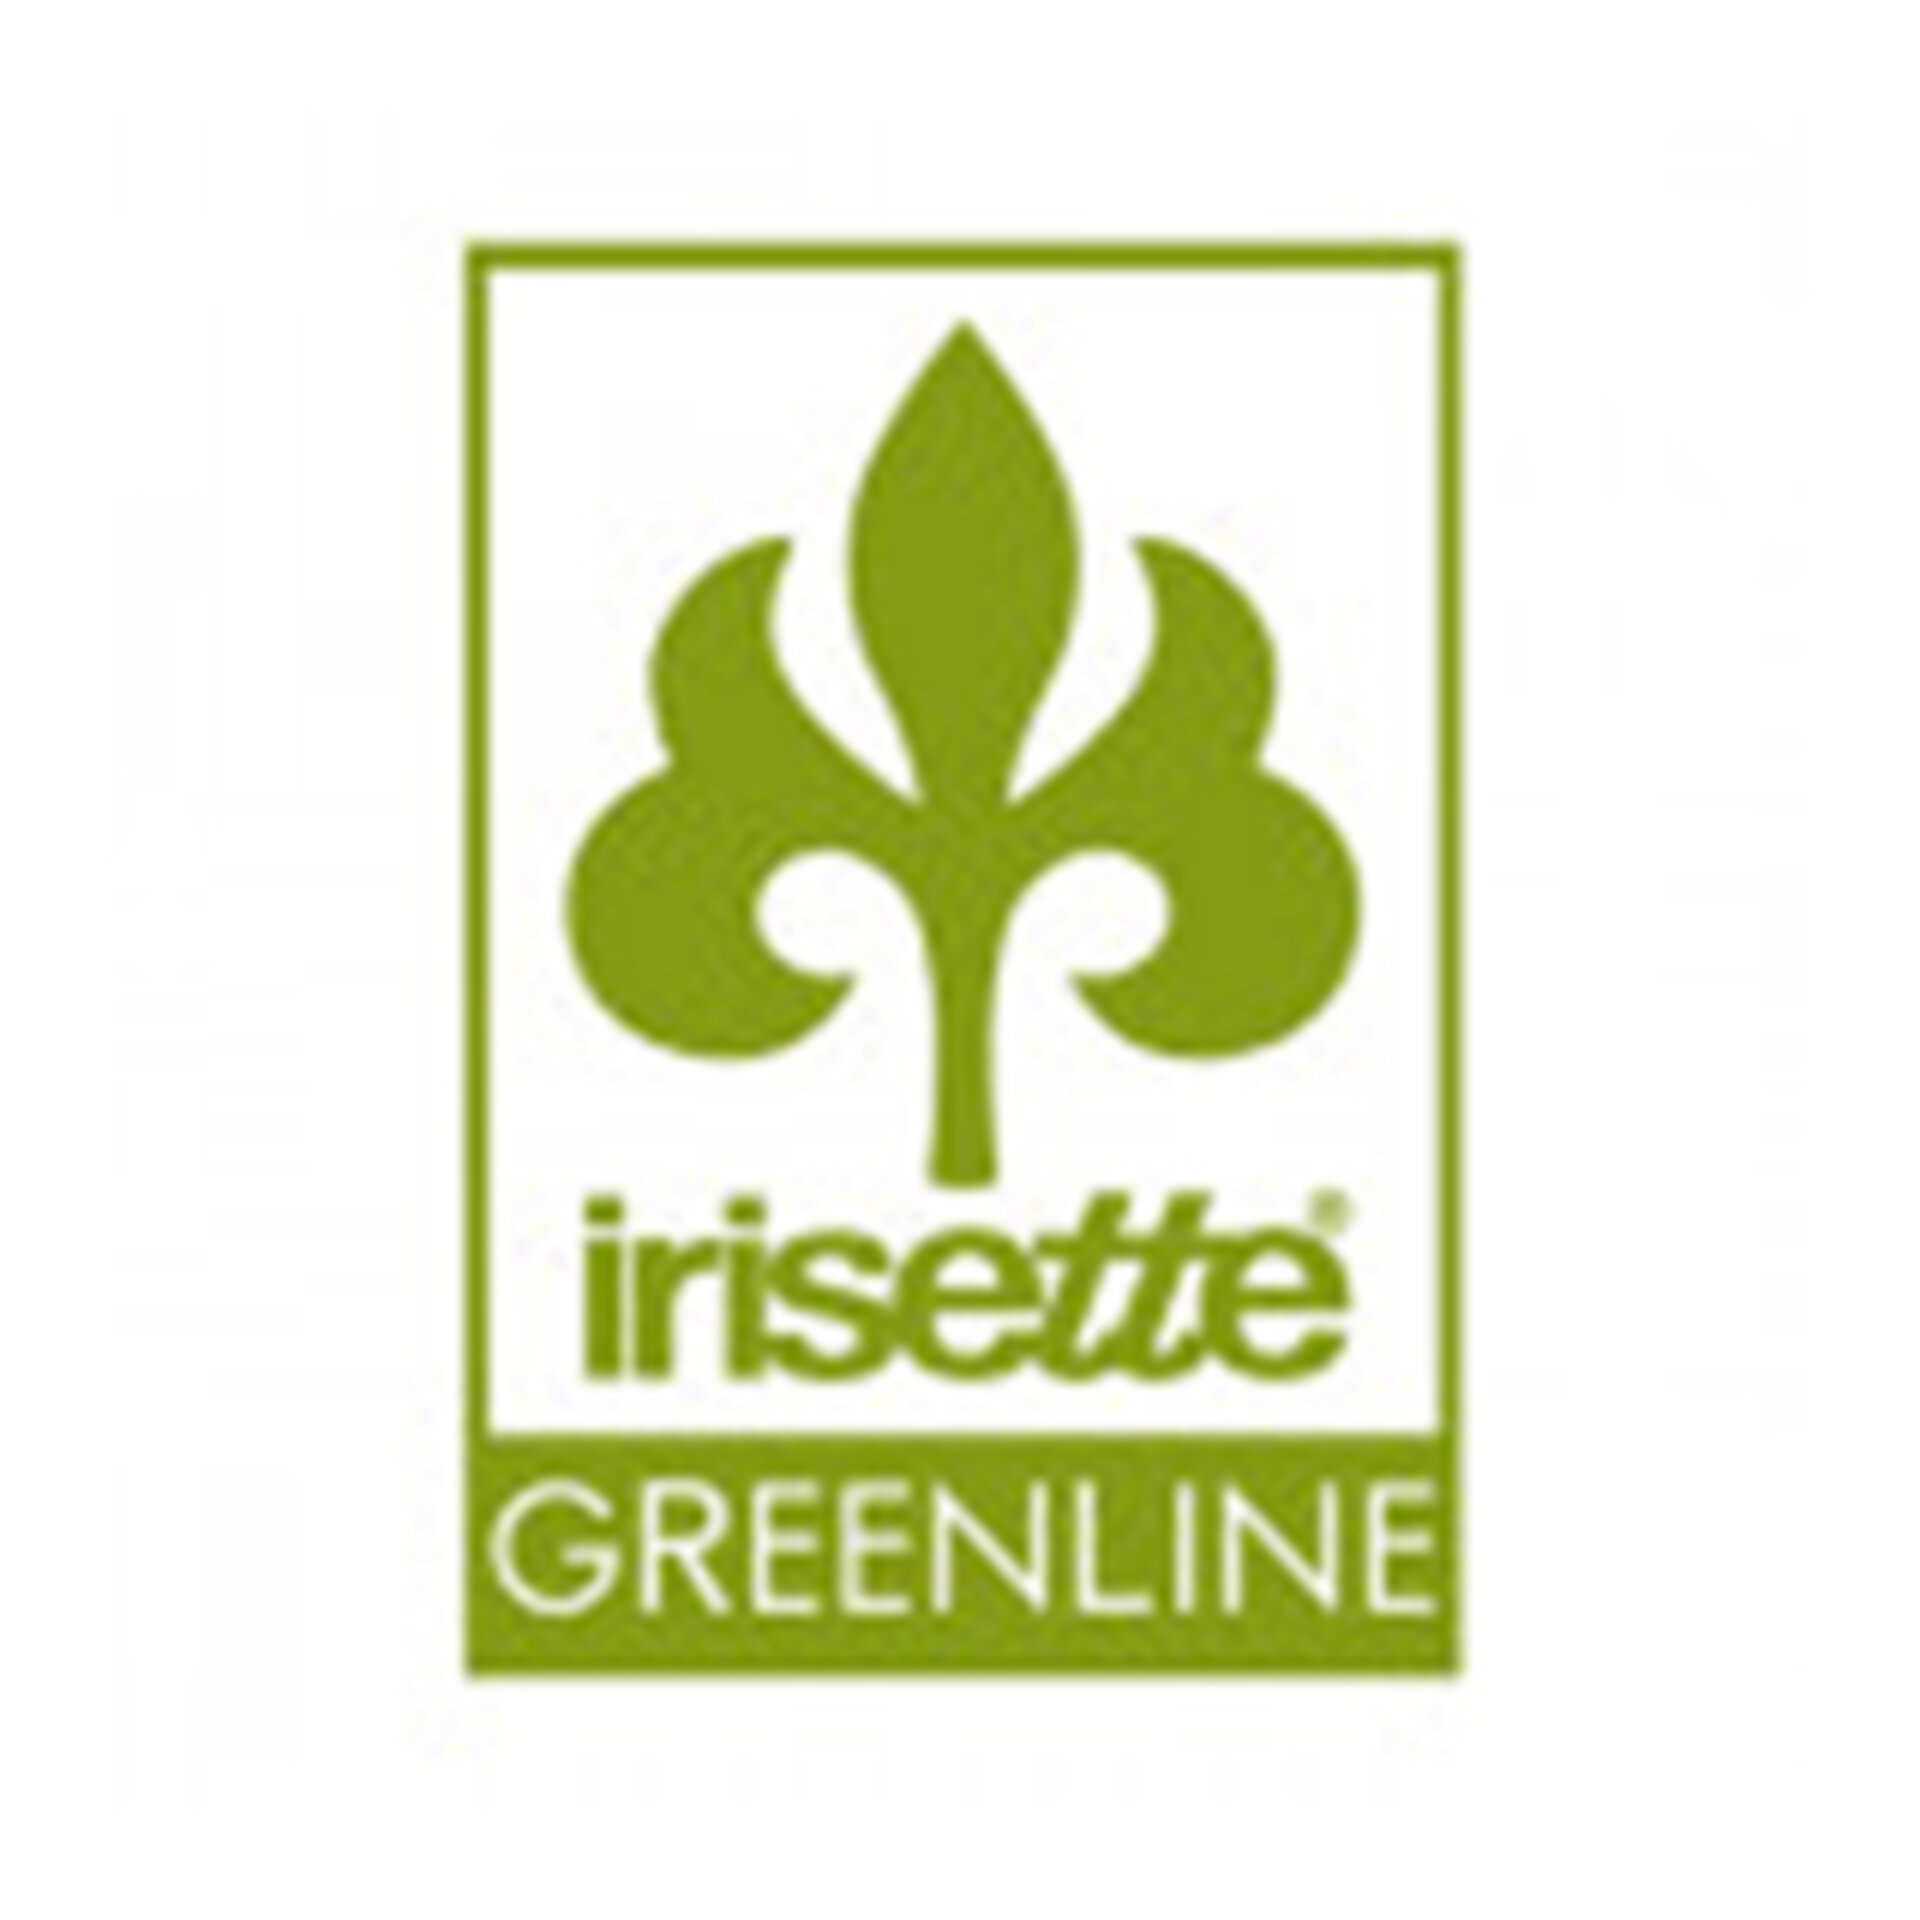 Irisette Greenline Heimtextilien bei Möbel Inhofer